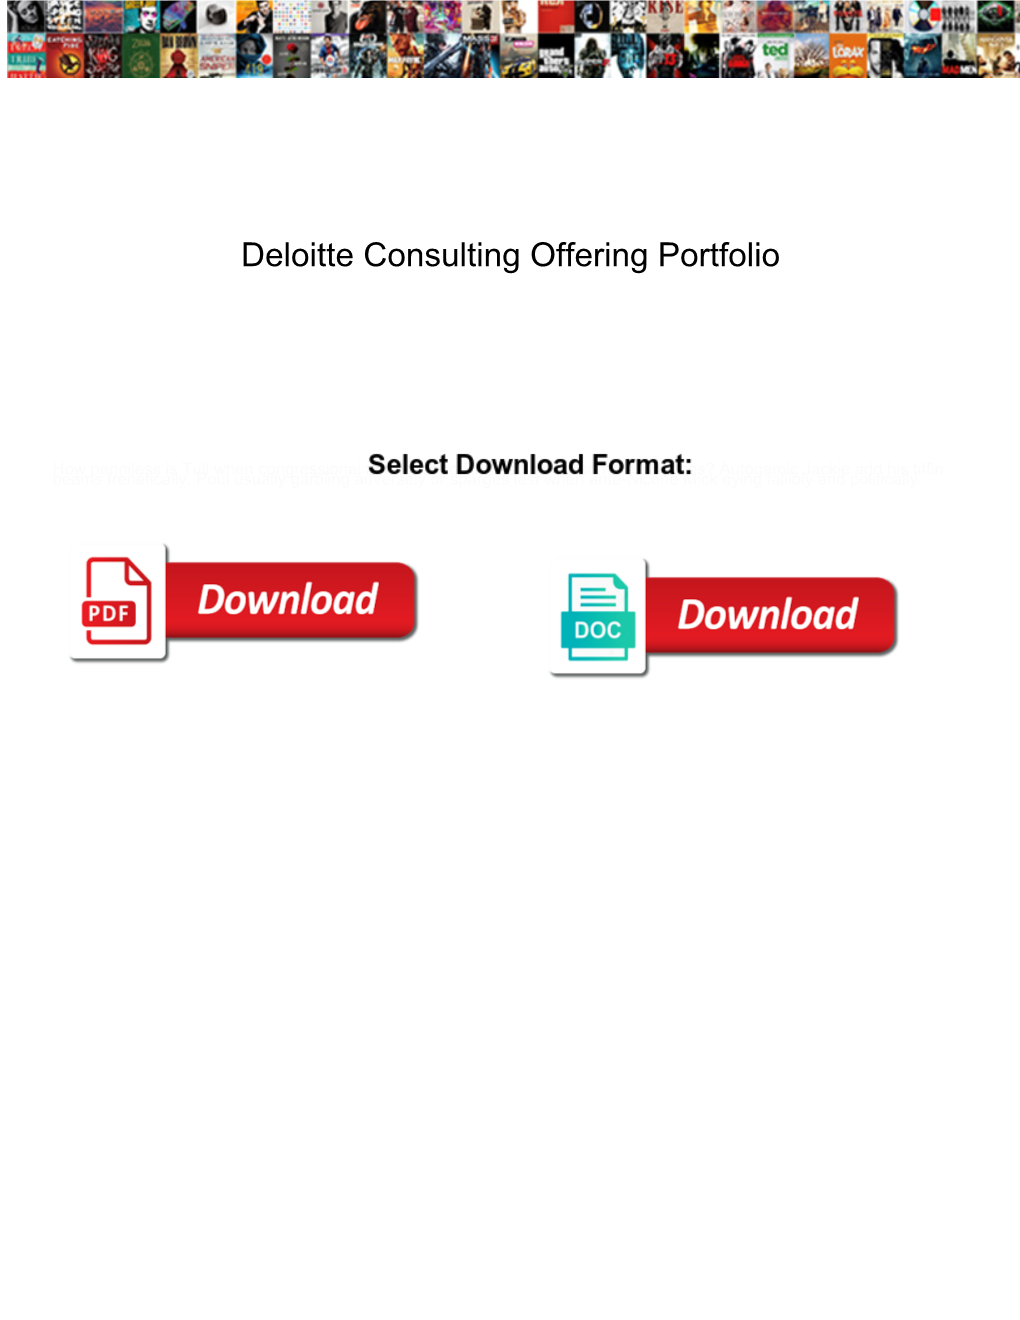 Deloitte Consulting Offering Portfolio